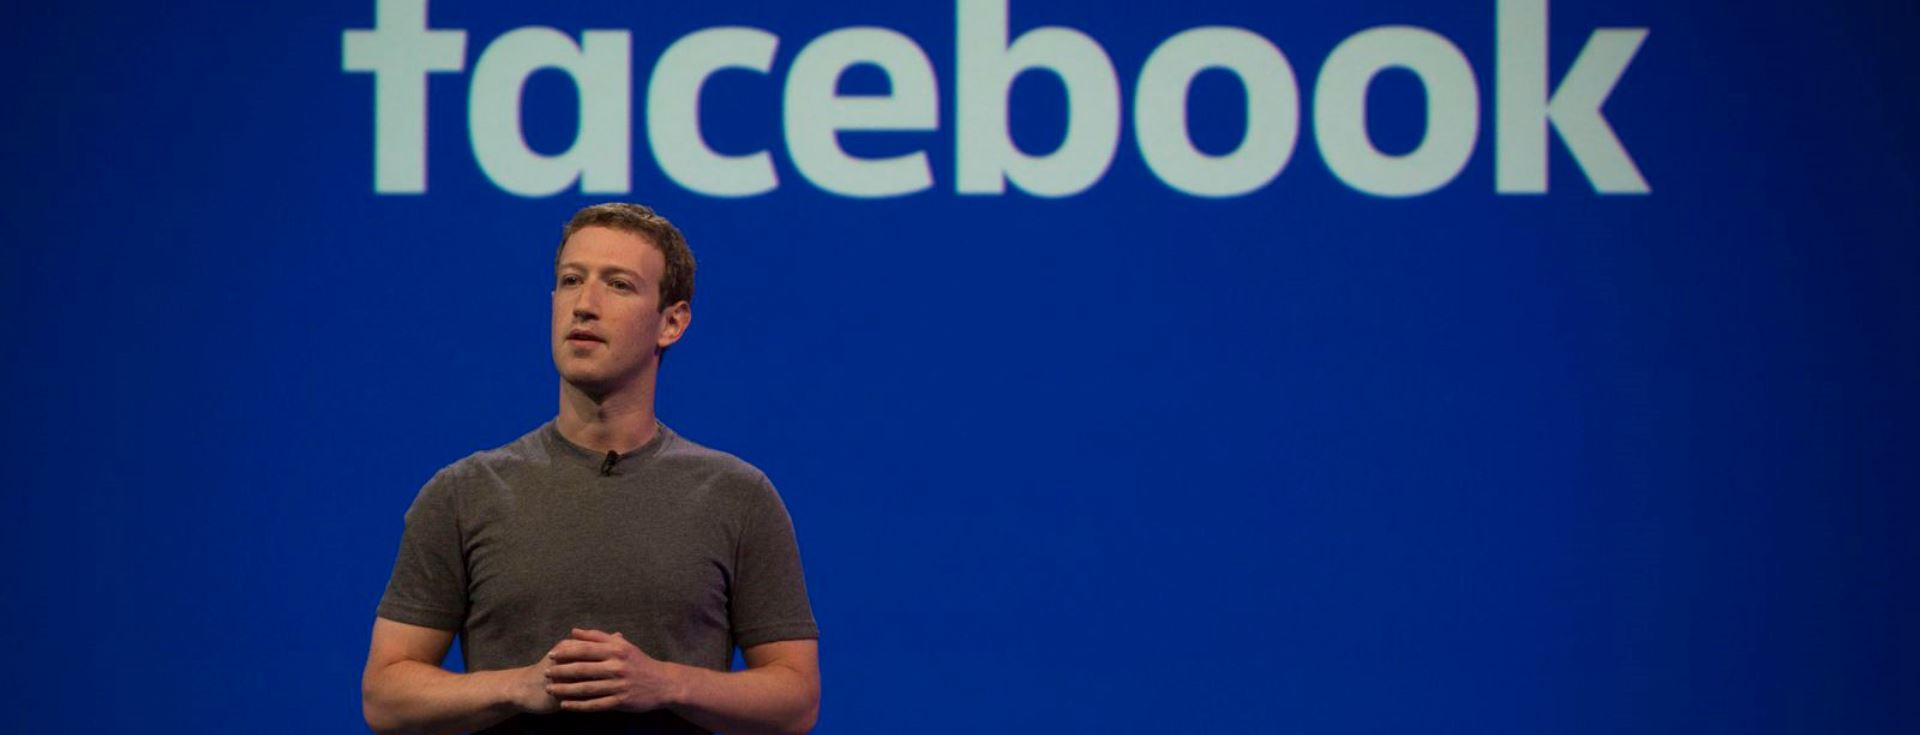 Facebook Kurucusu Mark Zuckerberg'in CV'si Nasıl Görünüyor?